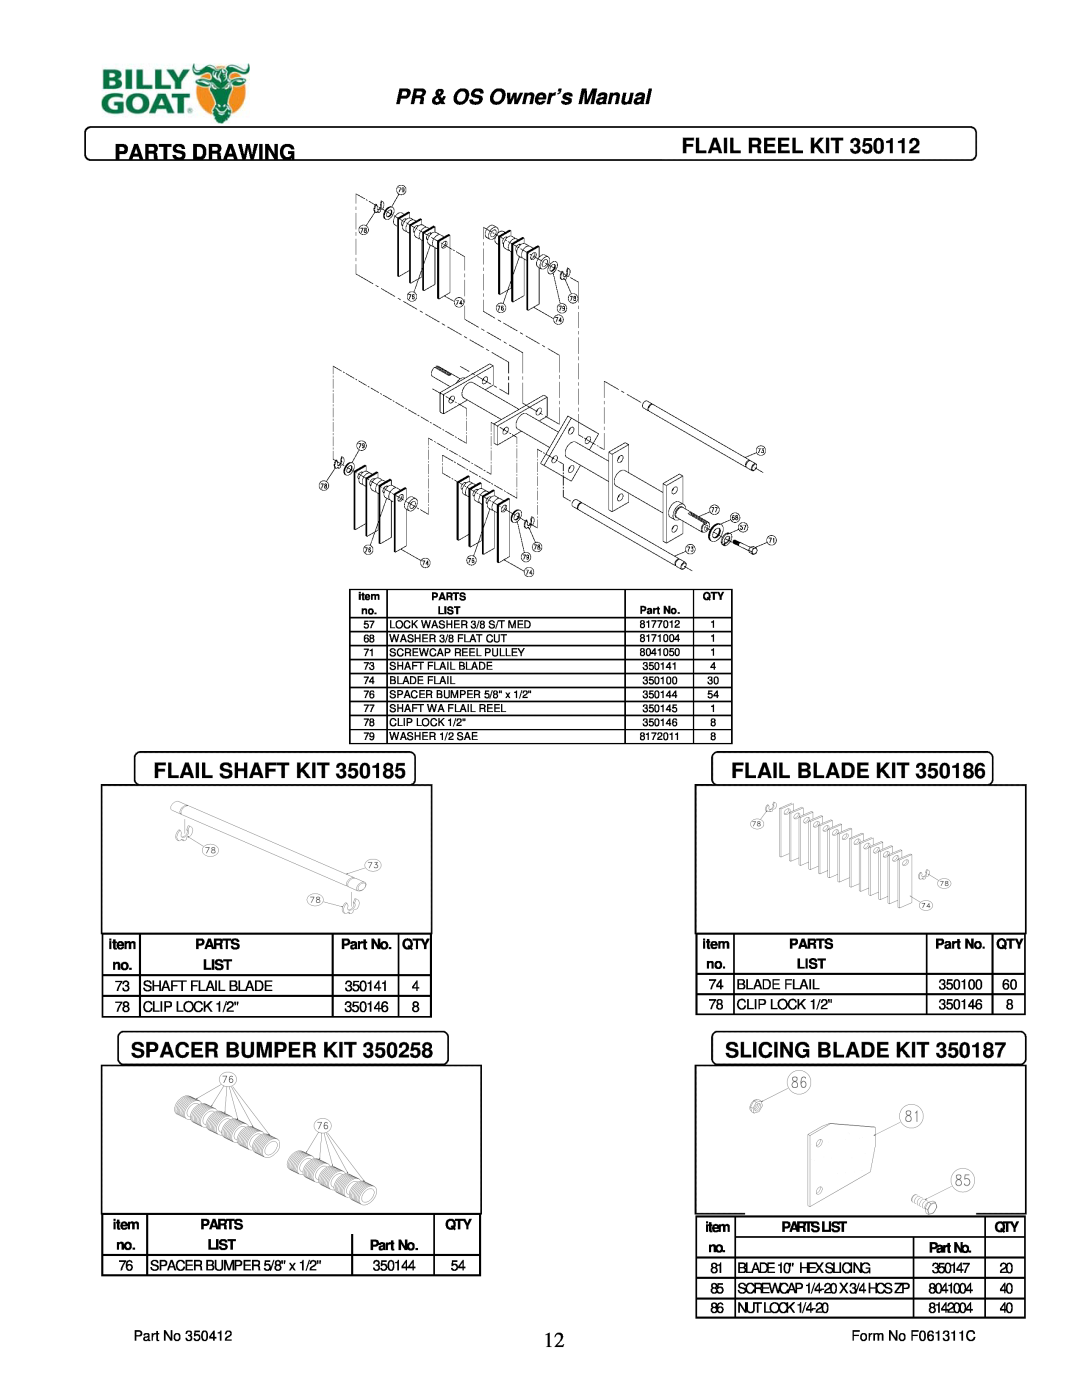 Billy Goat PR550 Parts Drawing, Flail Shaft Kit, Flail Blade Kit, Spacer Bumper Kit, Slicing Blade Kit, Flail Reel Kit 